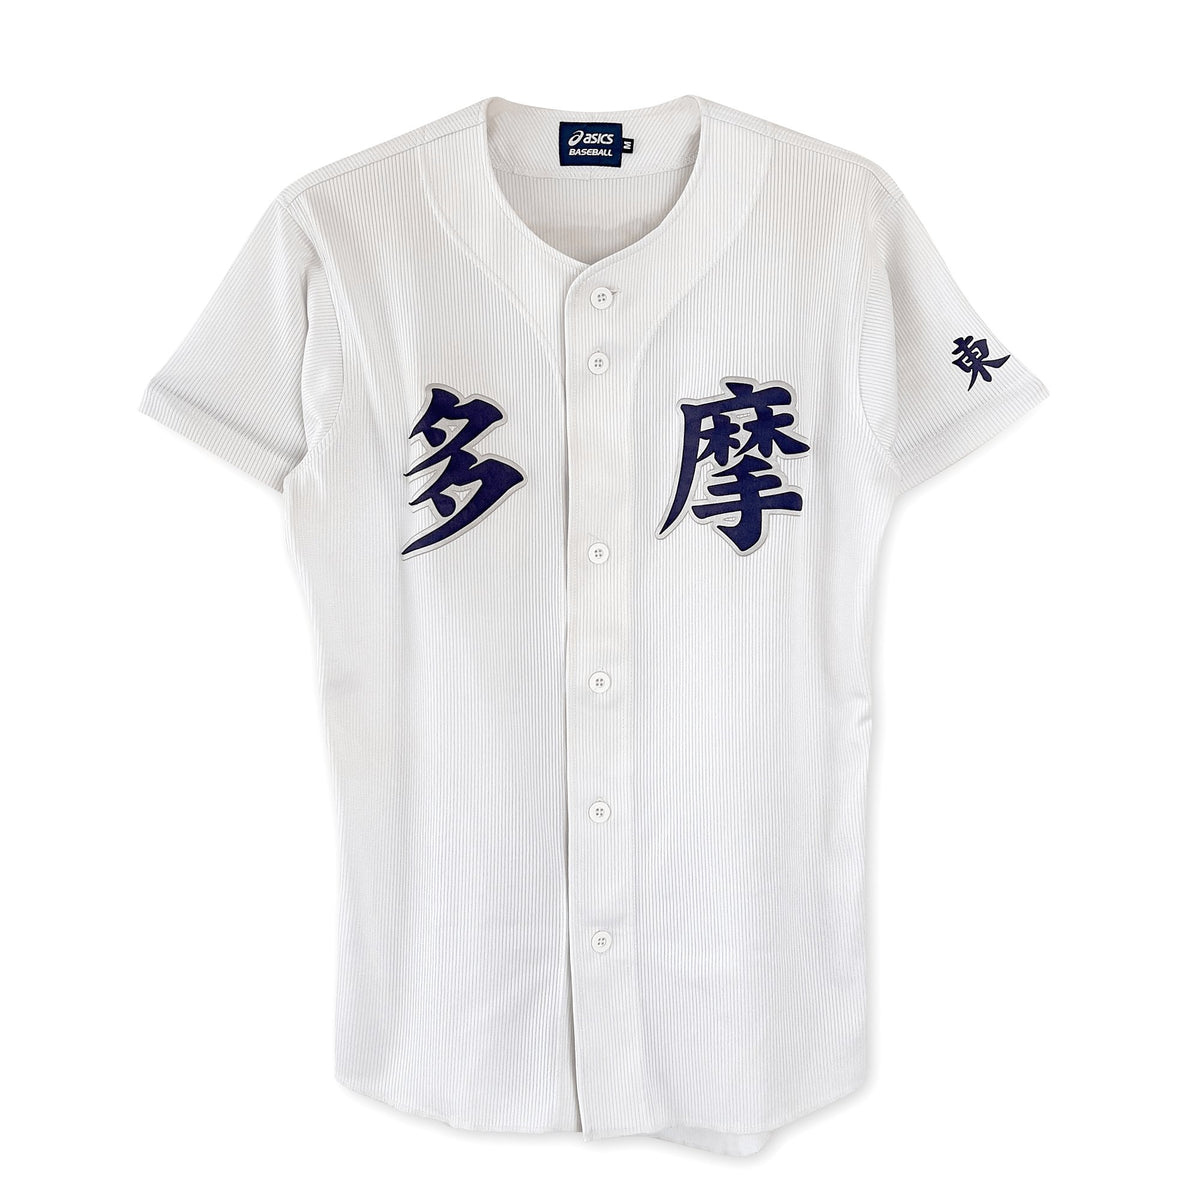 Vintage Japan Asics Koshien Tokyo Tama Gakuen High School Baseball Jersey - Sugoi JDM